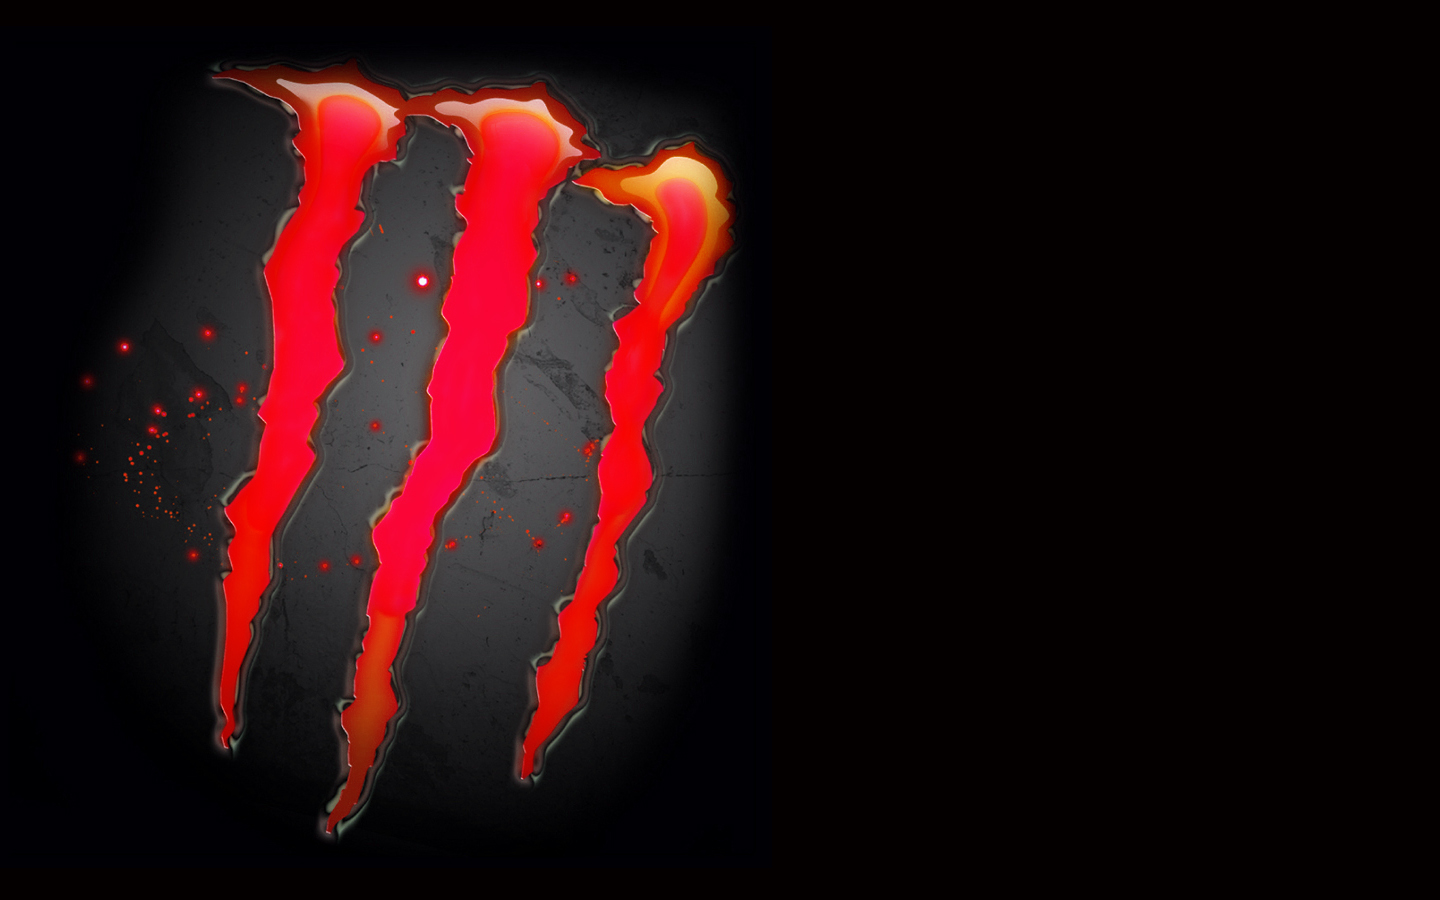 blue monster energy logo wallpaper